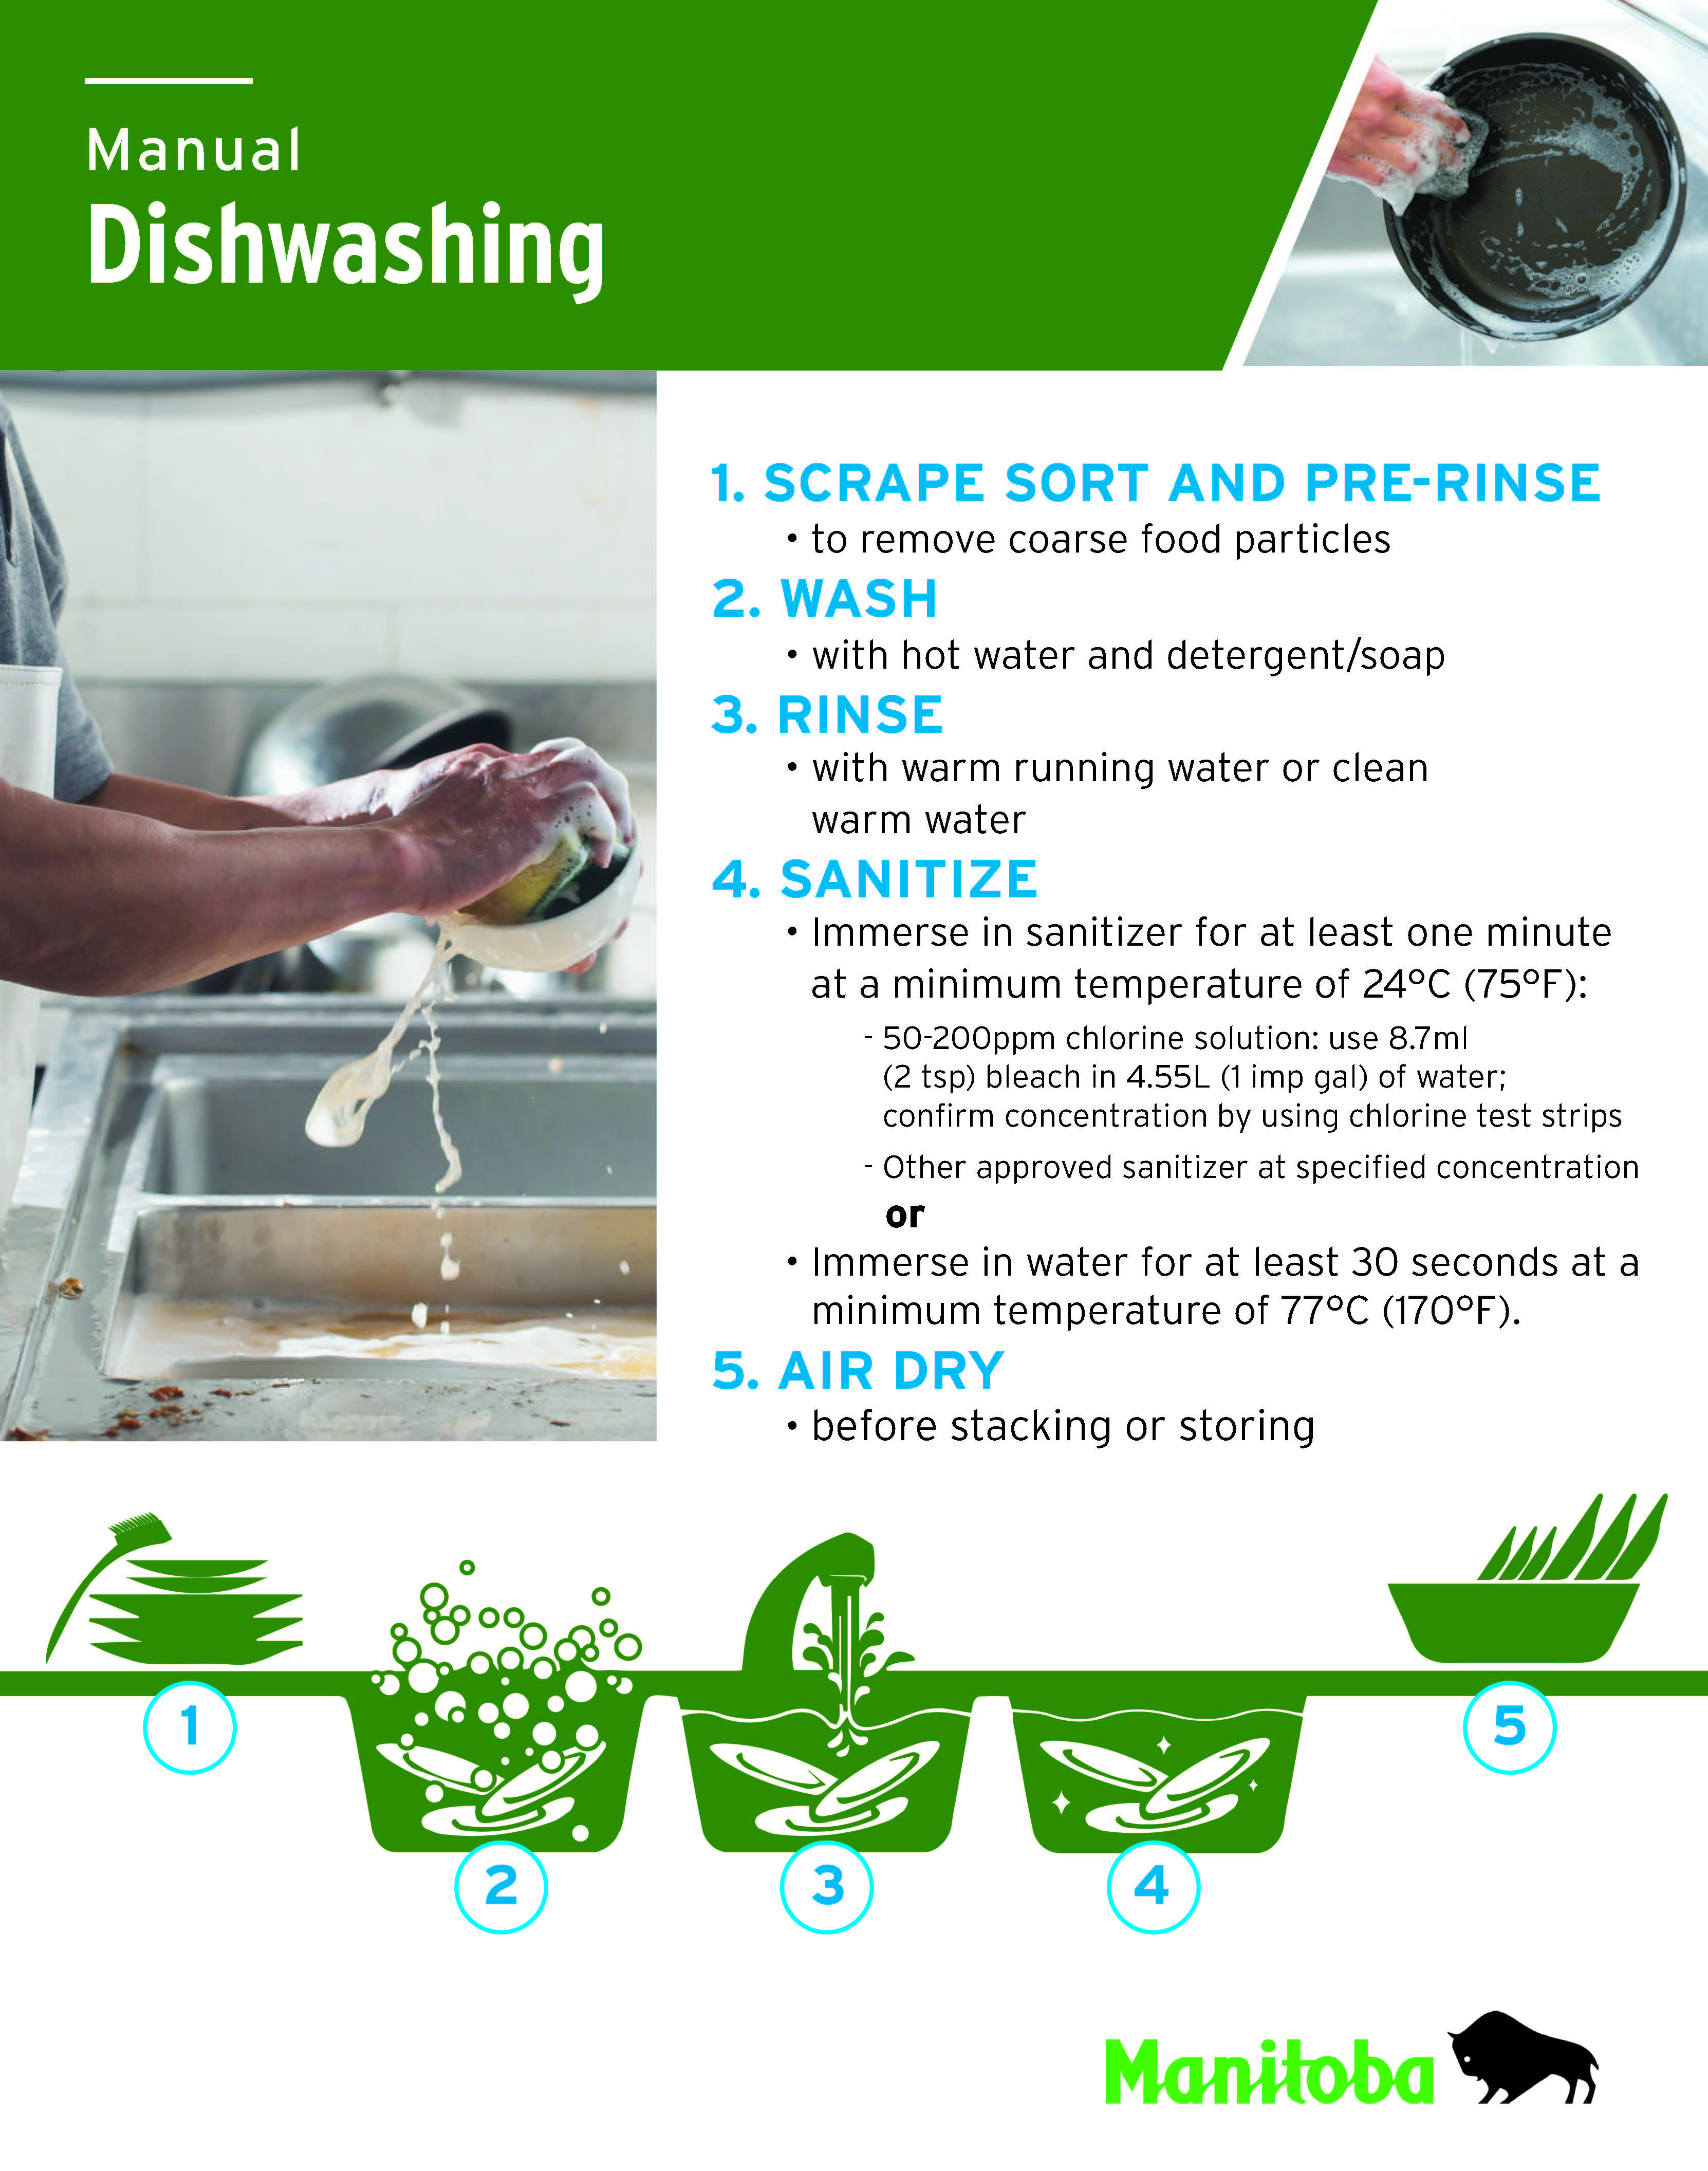 Manual Dishwashing Poster